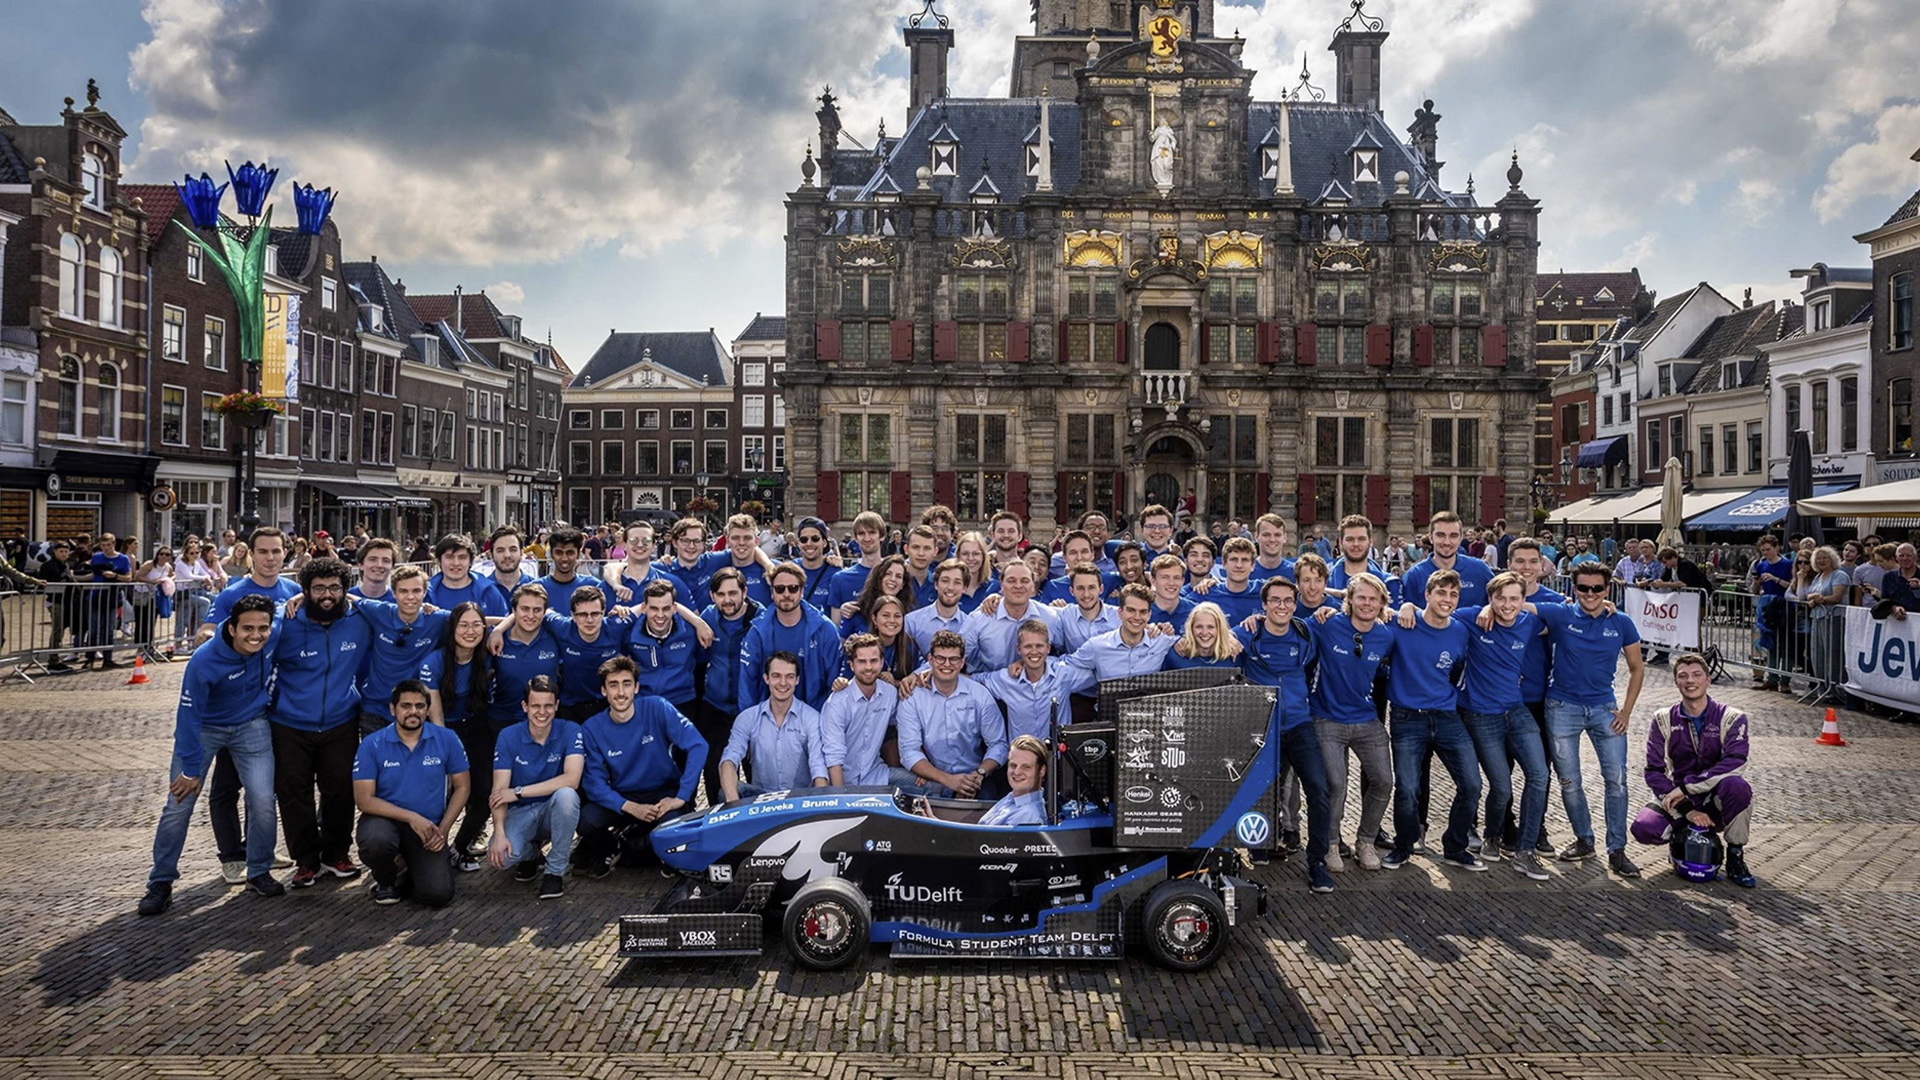 Das Team der TU Delft mit seinem Rennwagen im Formel-Stil